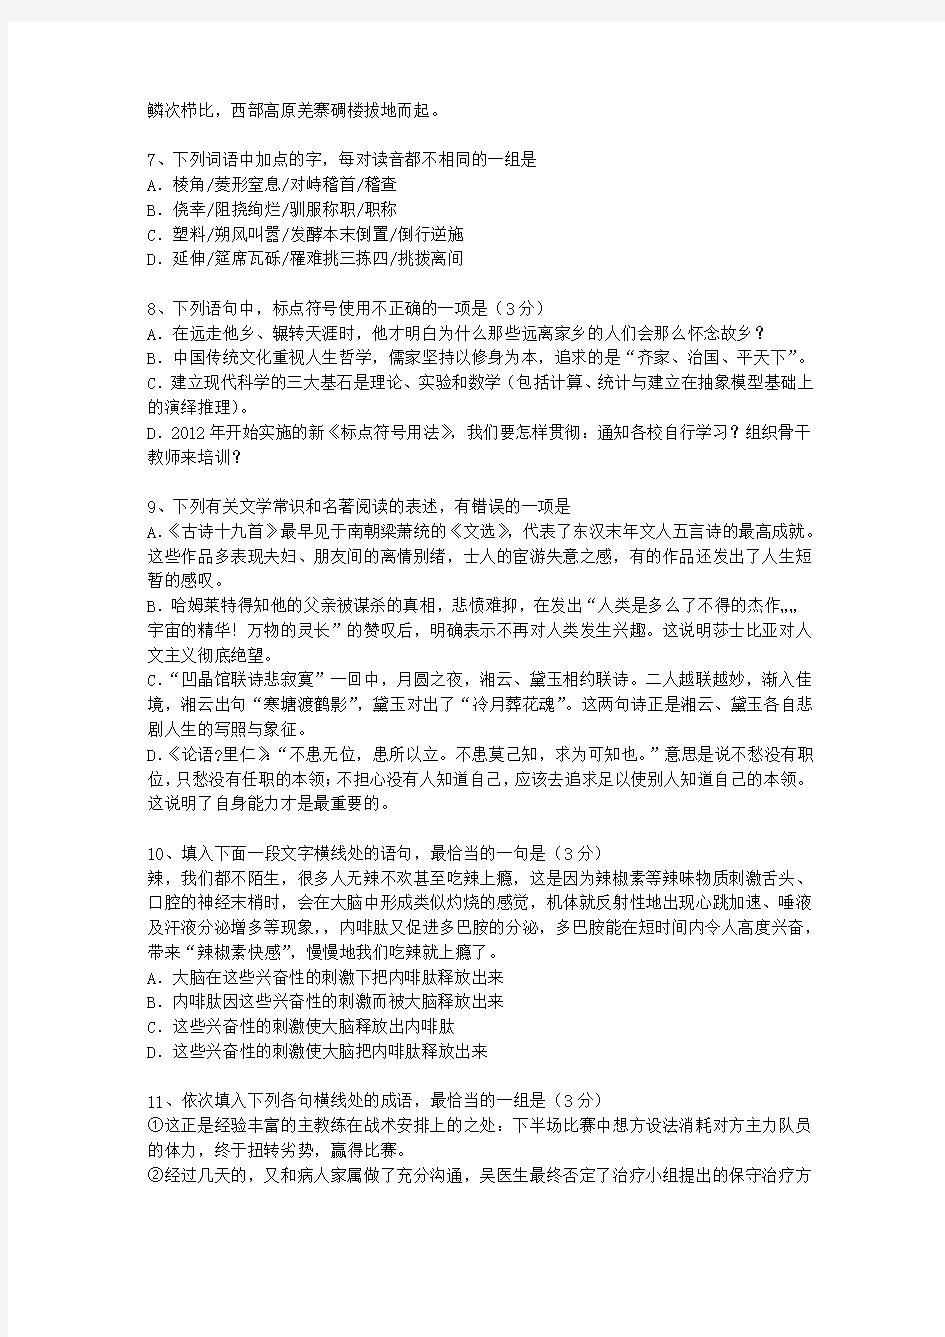 2010湖北省语文大纲(答案详解版)理论考试试题及答案